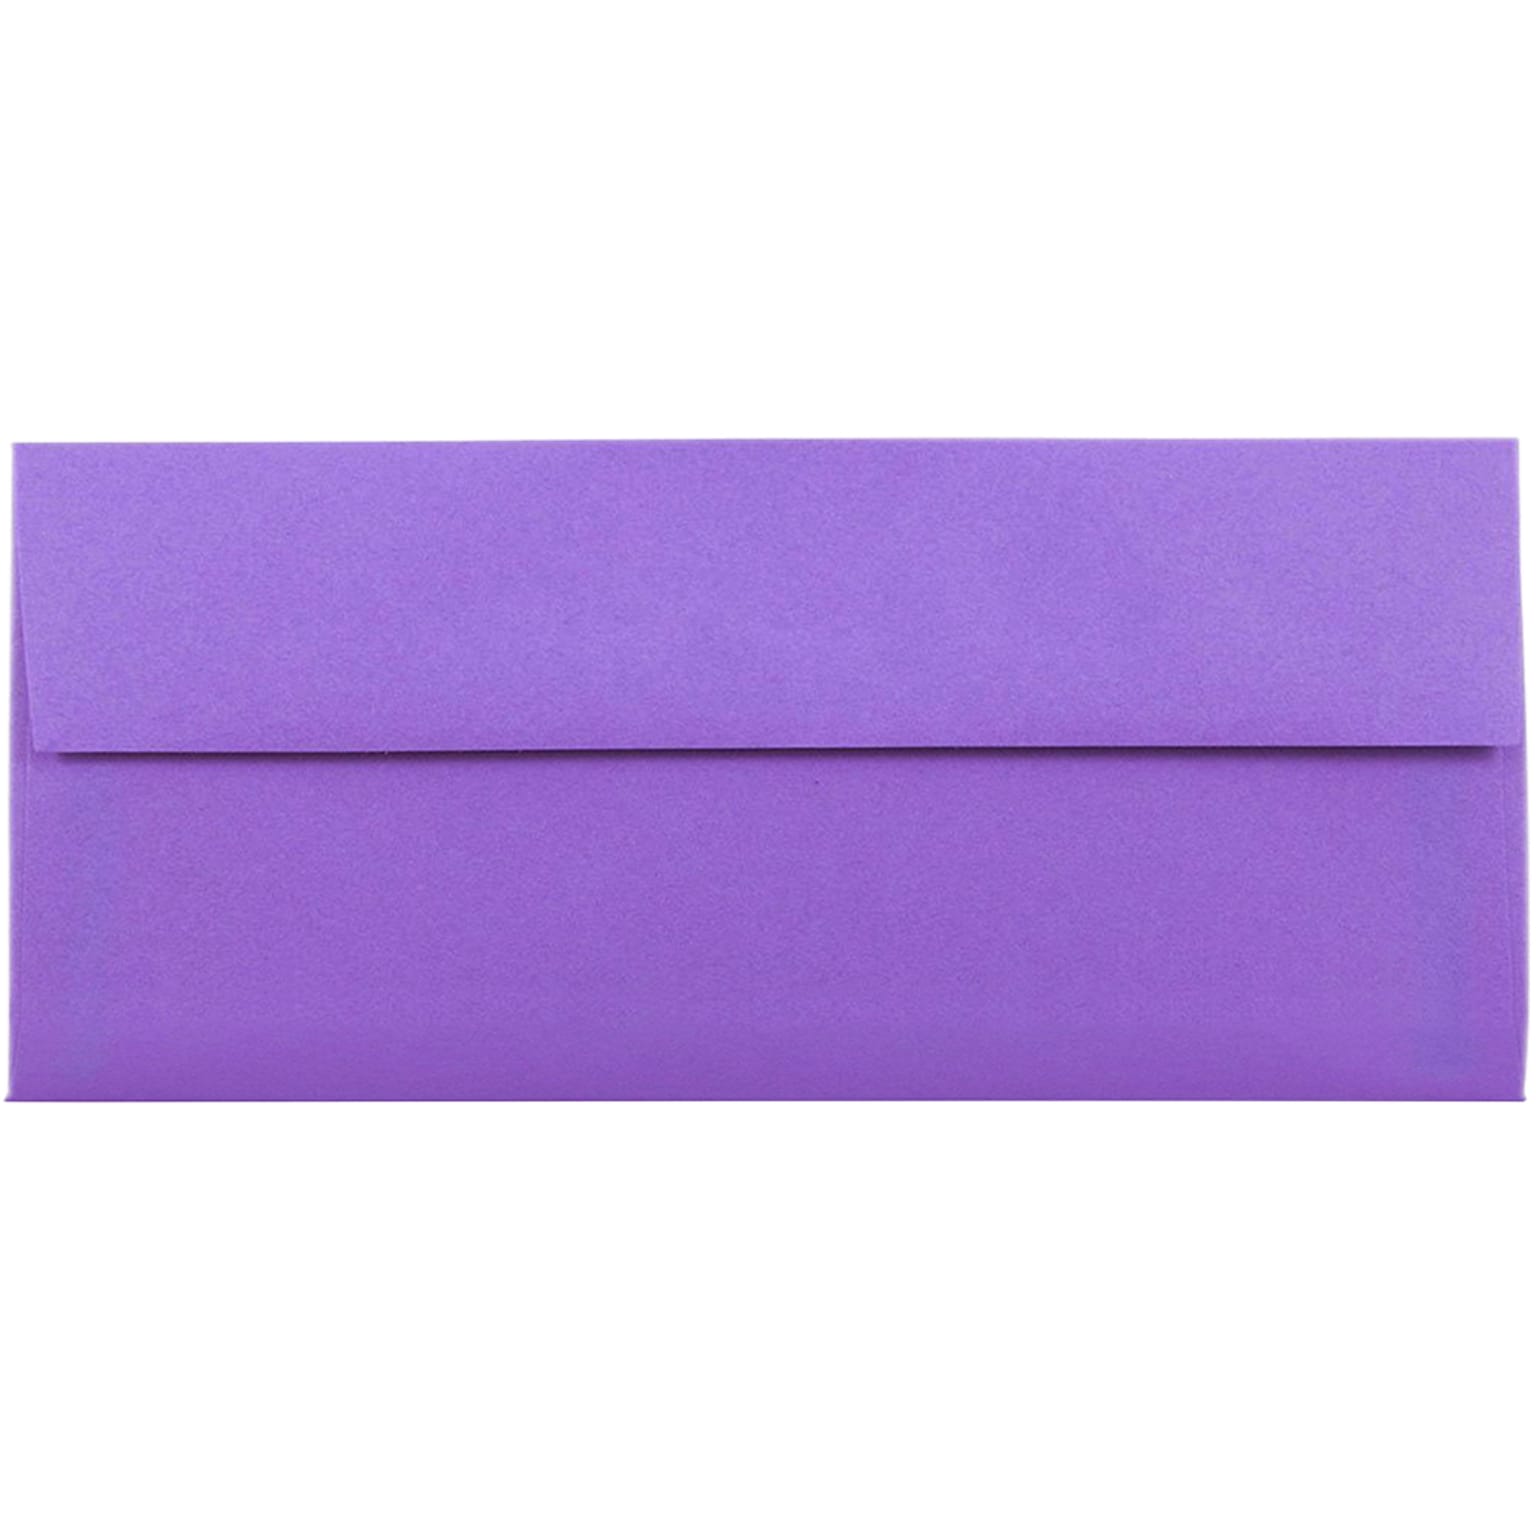 JAM Paper Open End #10 Business Envelope, 4 1/8 x 9 1/2, Violet Purple, 50/Pack (15864I)